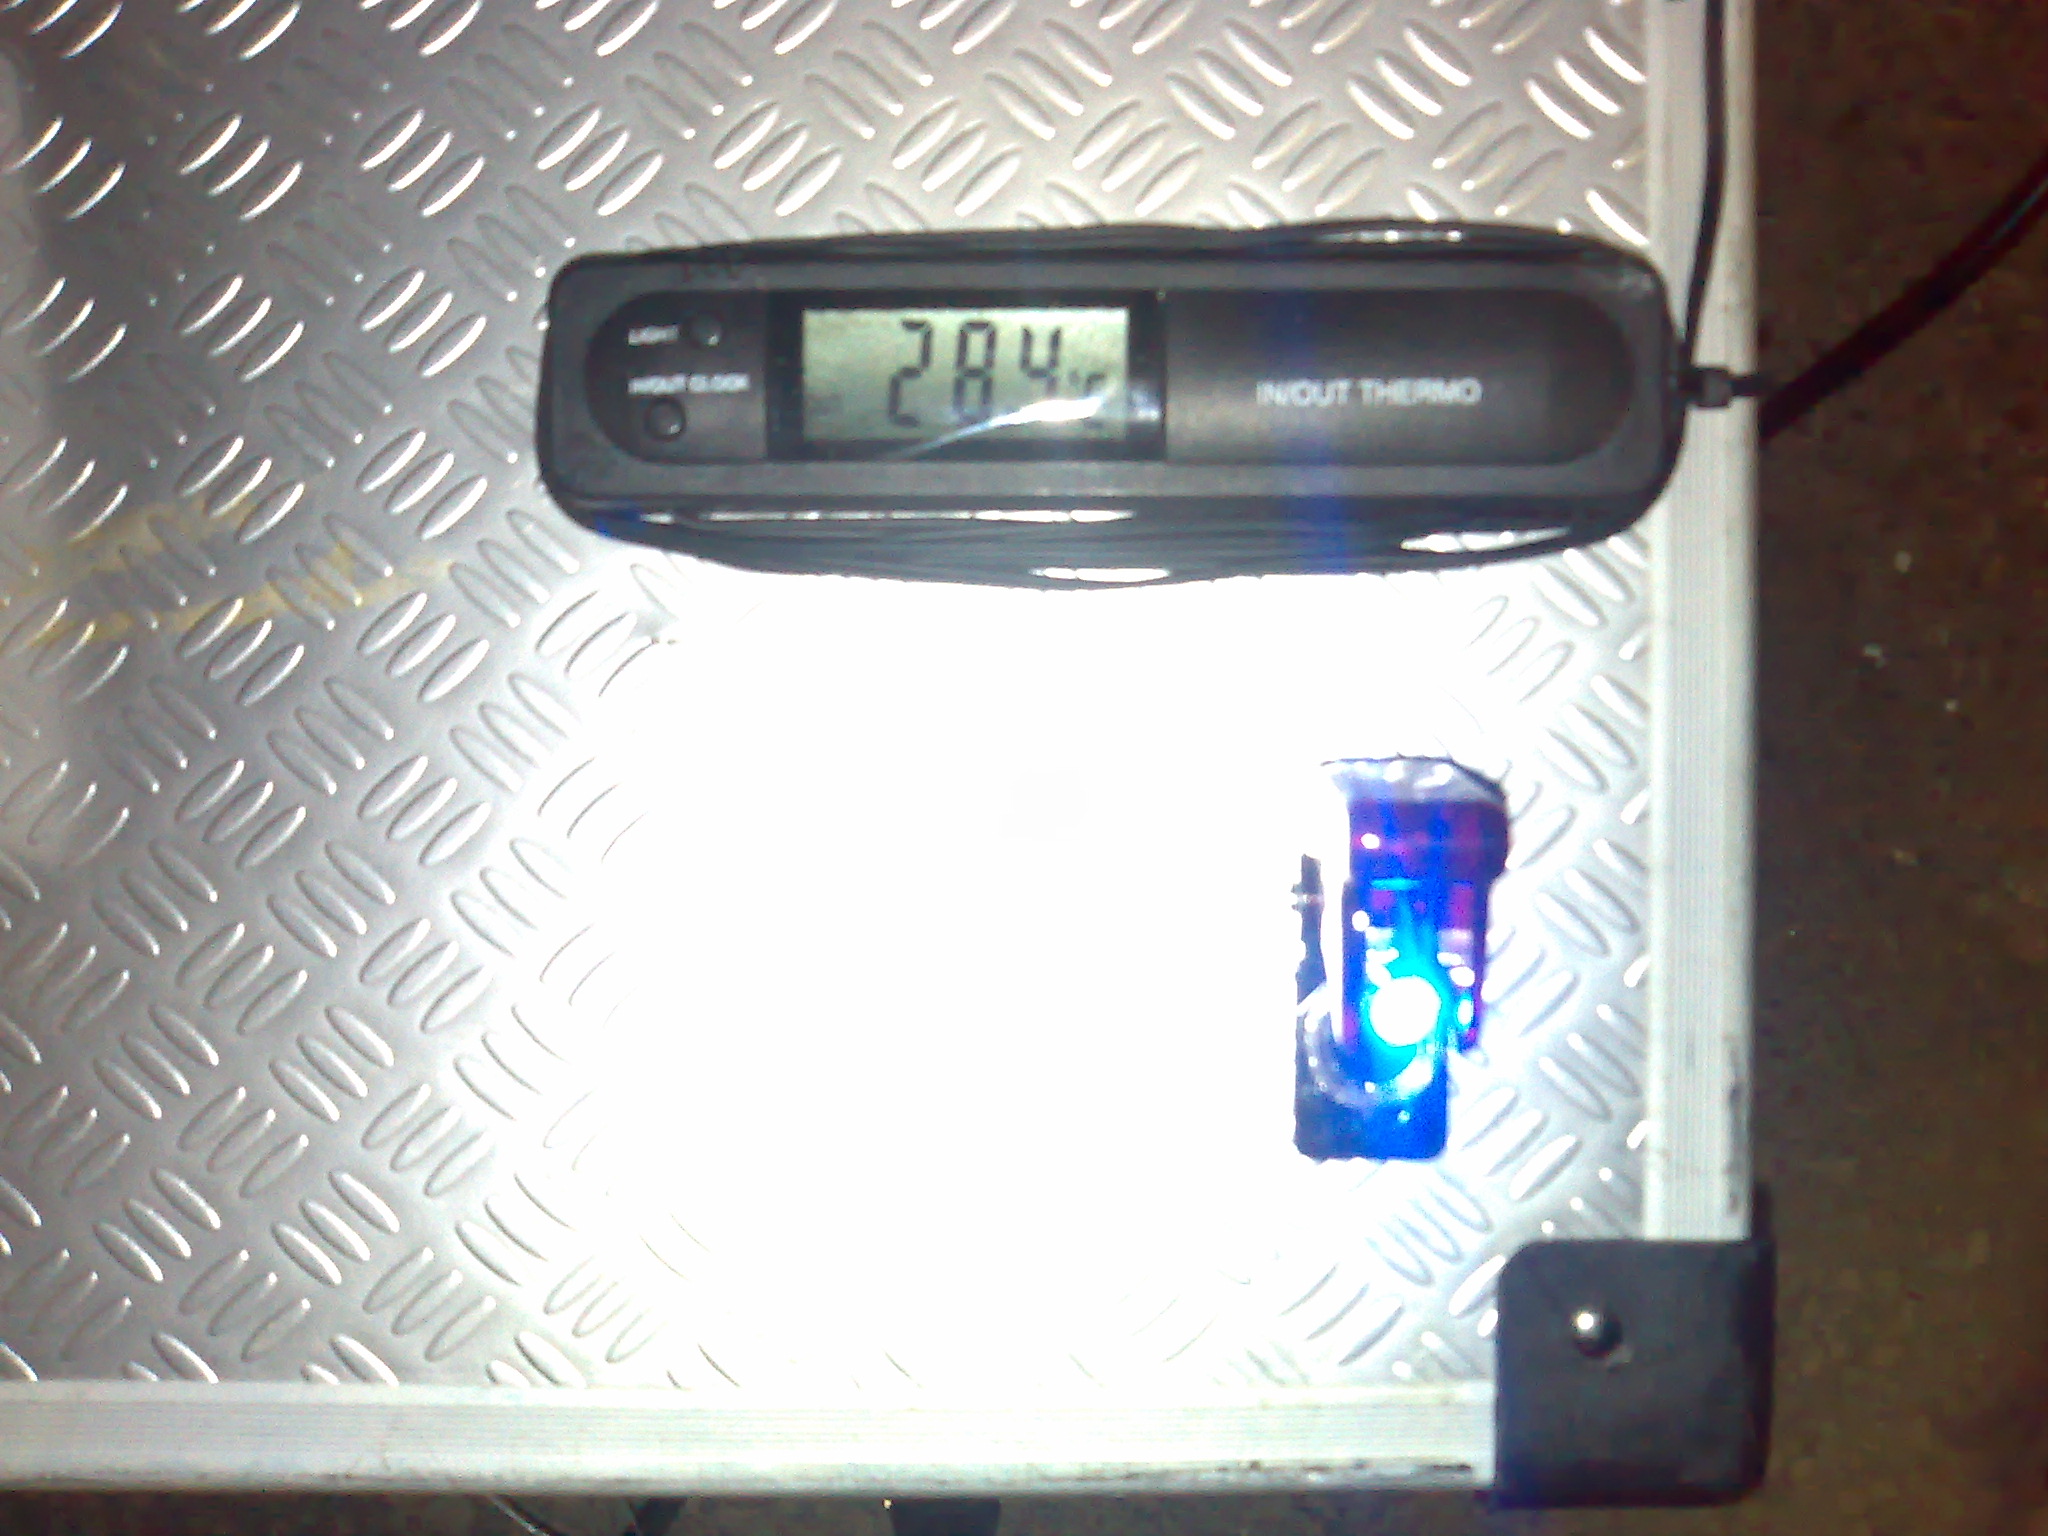 Garagen Temp. 18°C  Koffer innentemp.  28,4° nach knapp 2 minuten...